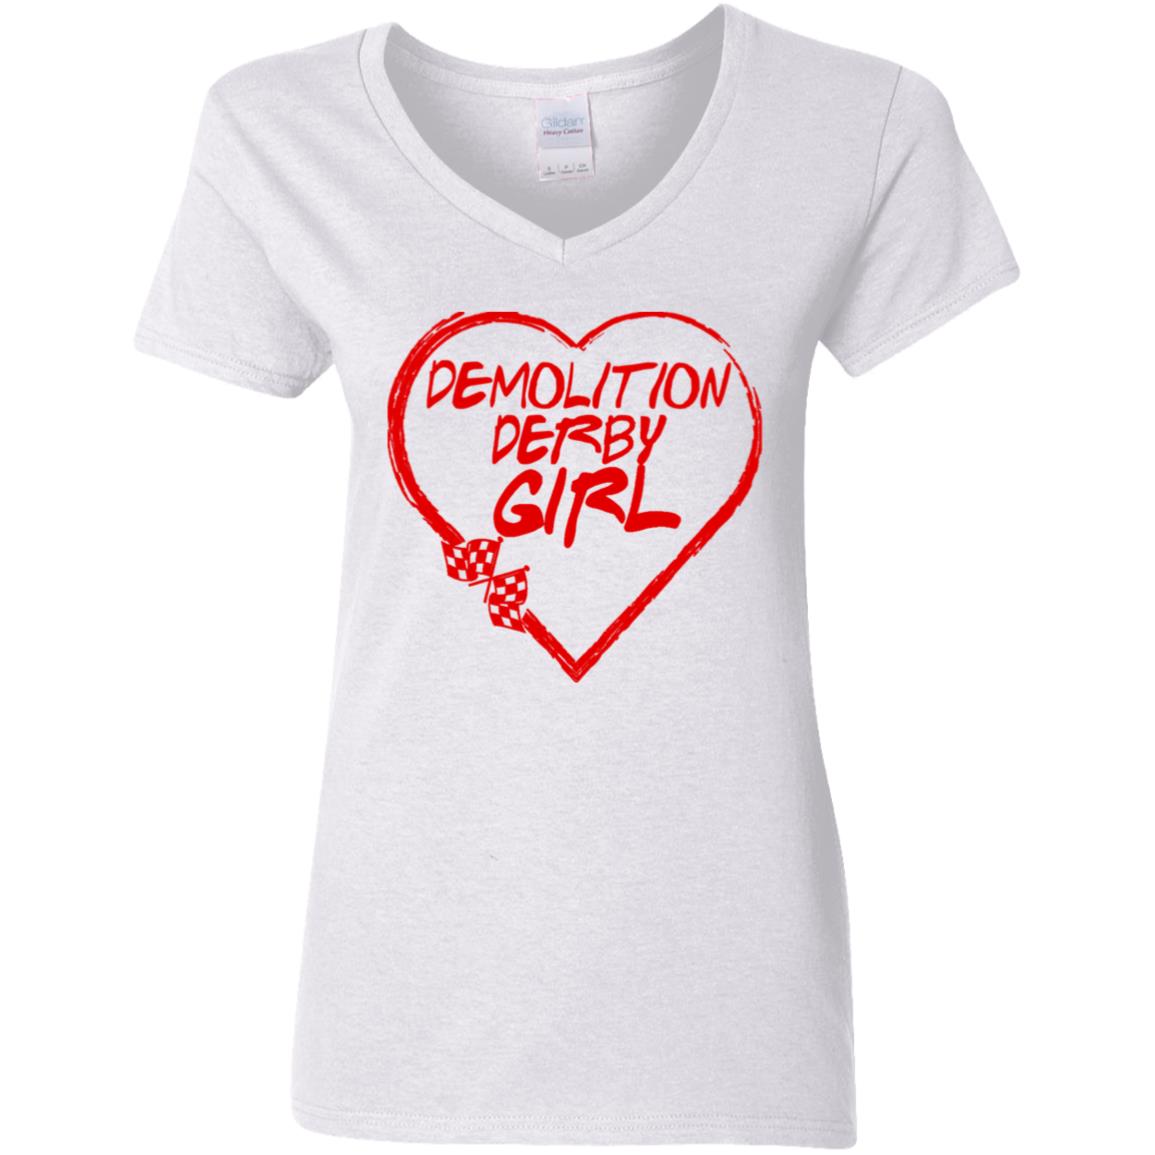 Demolition Derby Girl Heart Ladies' 5.3 oz. V-Neck T-Shirt